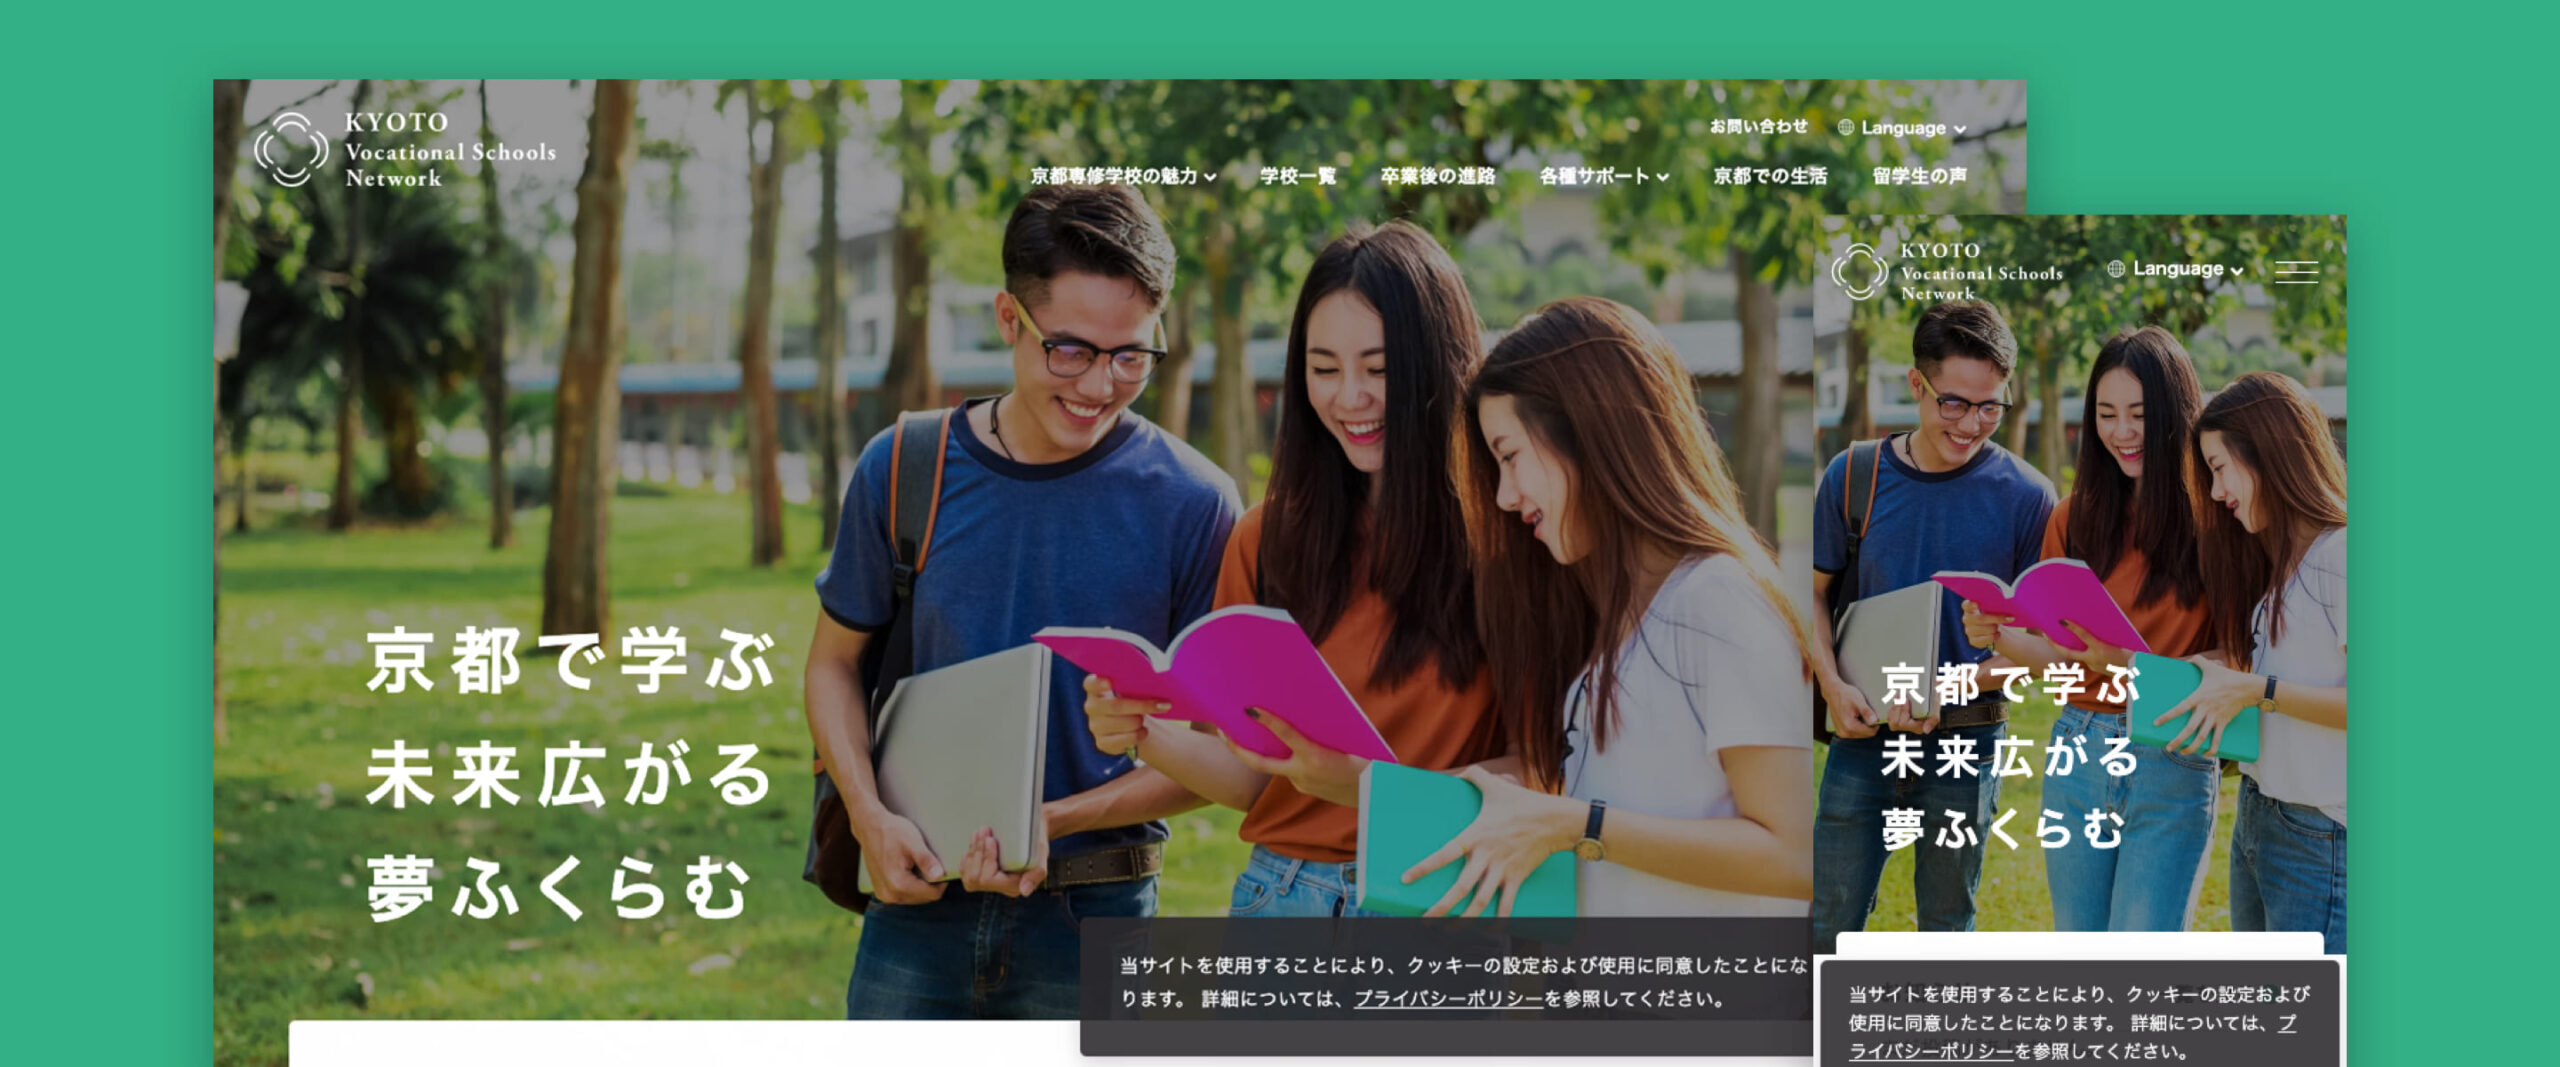 京都専修学校多言語サイト<br>Kyoto Vocational Schools Network